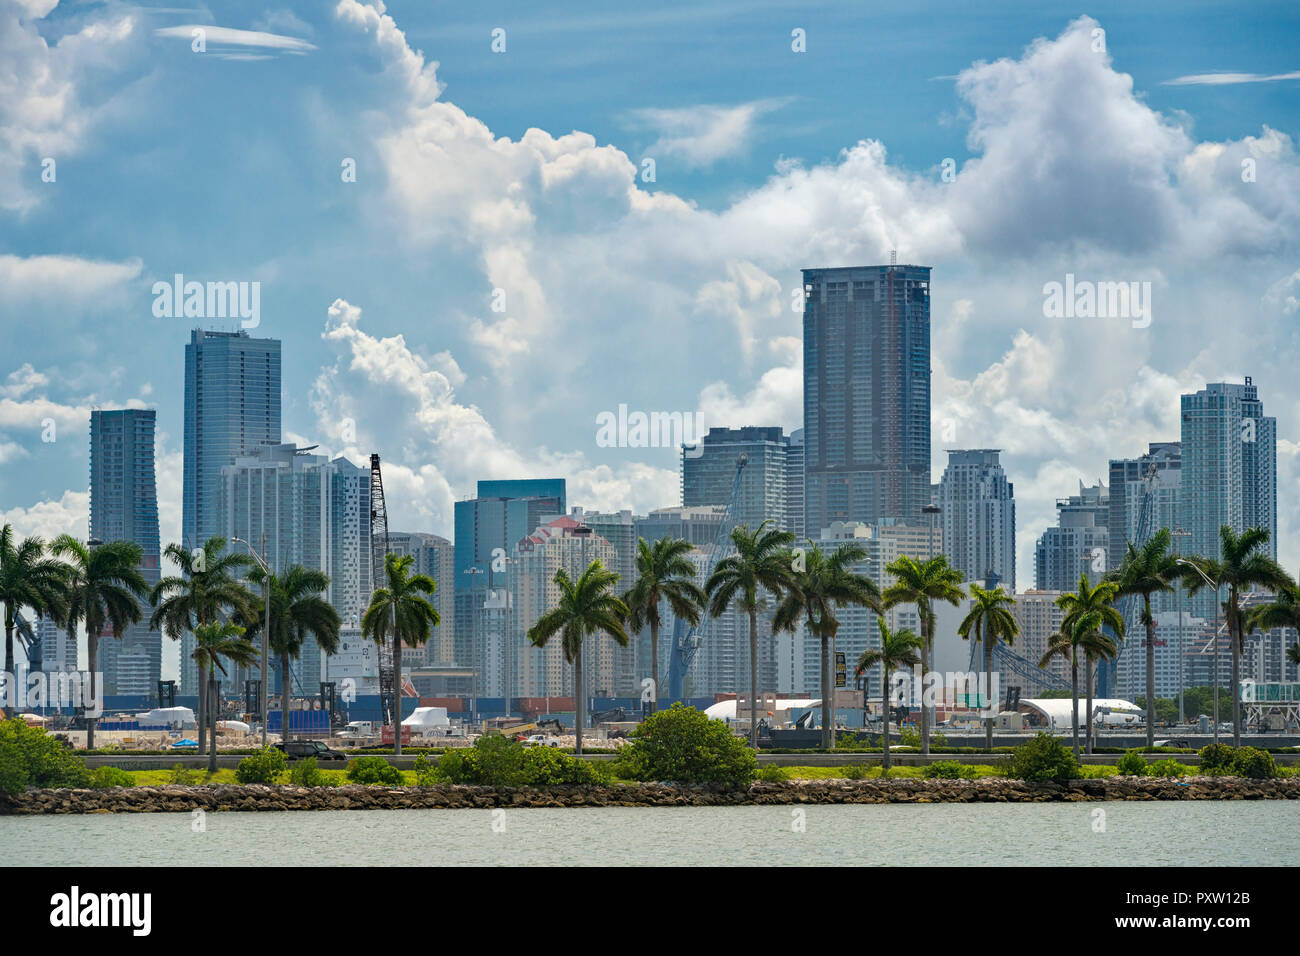 Stati Uniti d'America, Florida, Miami, Downtown, skyline con alta sorge nel centro cittadino di Miami e di palme con le nuvole sopra Foto Stock